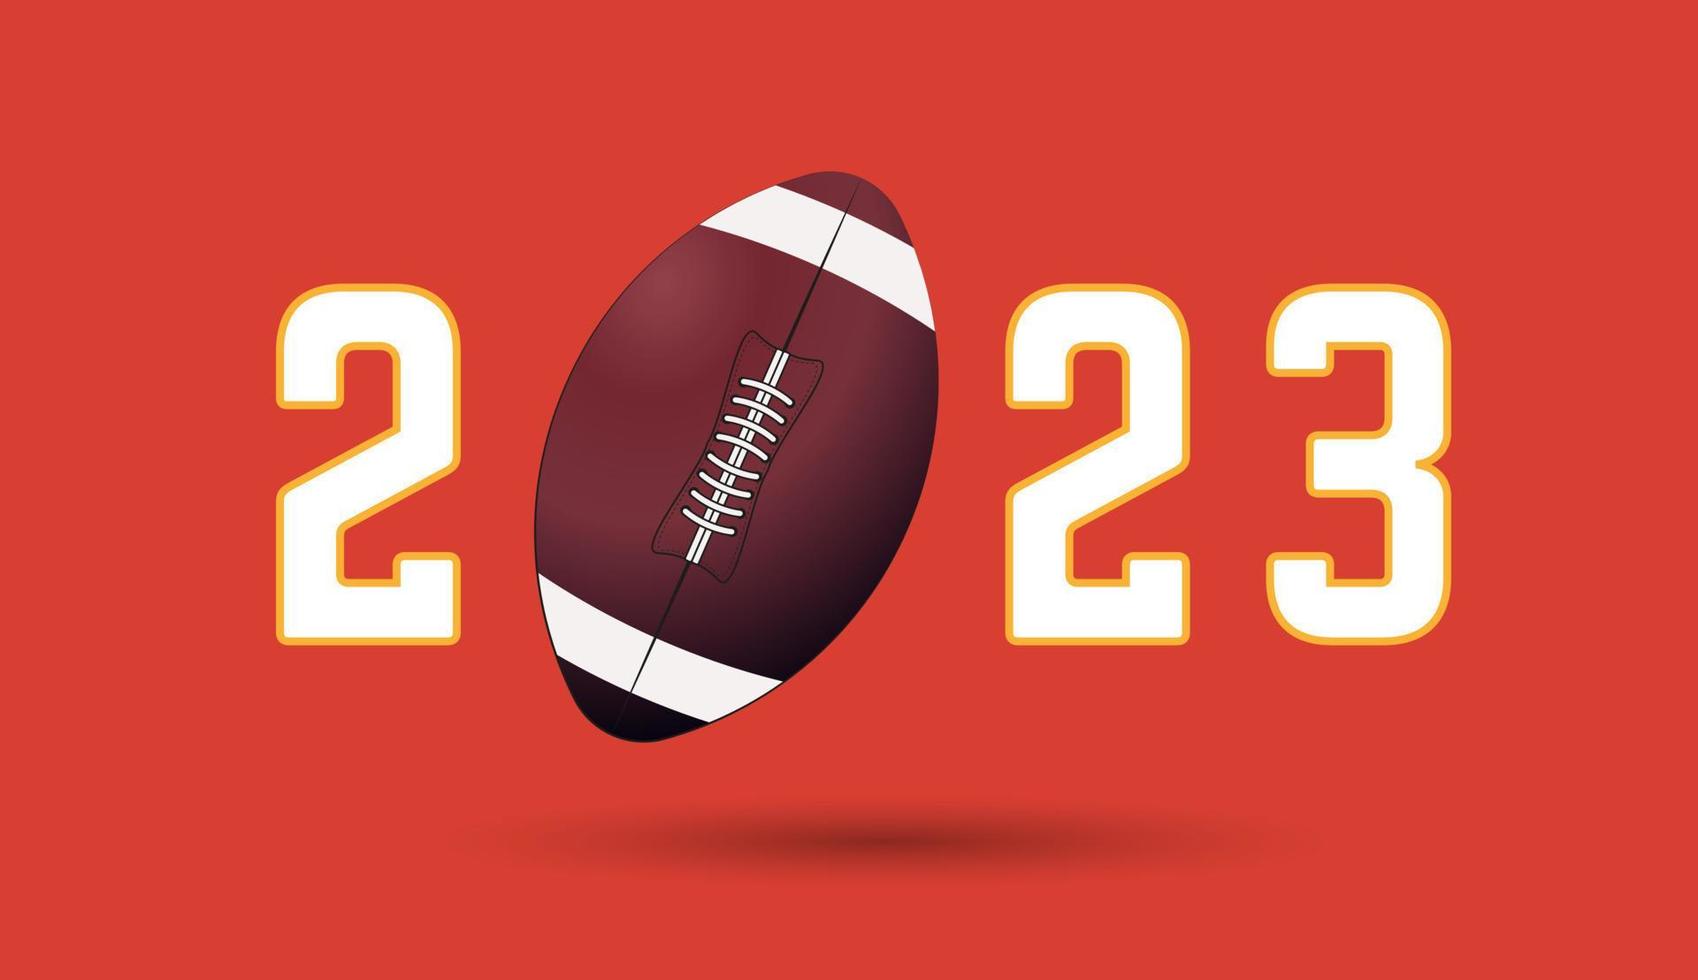 2023 do americano futebol corresponder, uma futebol bola em ano cartas, para Esportes conceitos, bandeira, poster. vetor ilustração